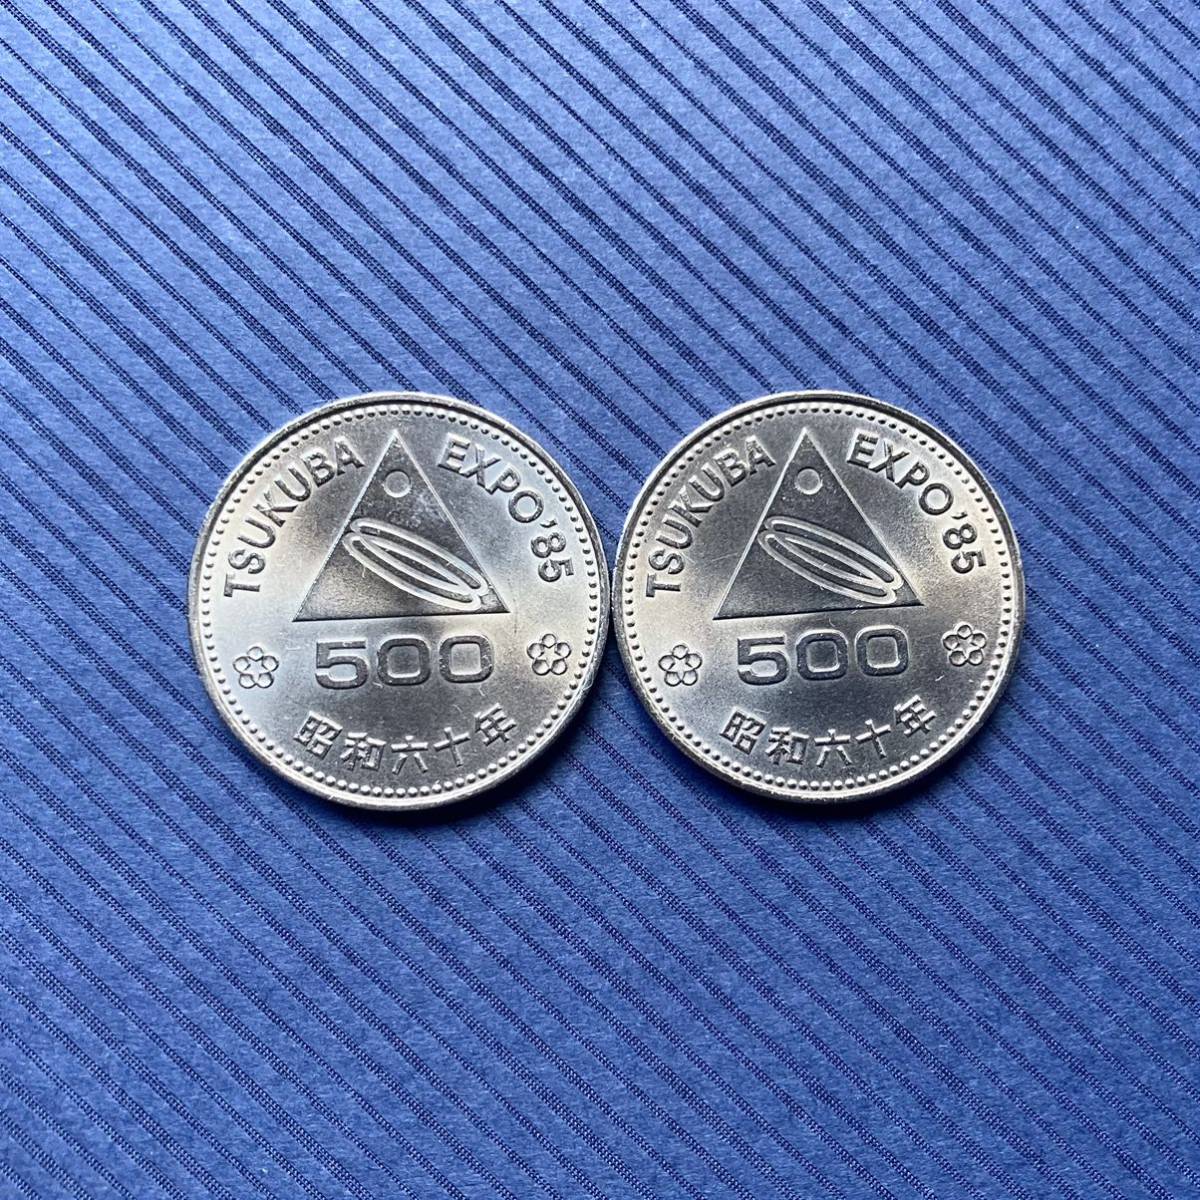 昭和60年 つくば万博 EXPO'85 つくば国際科学技術博覧会 500円 記念硬貨 プルーフ 白銅貨幣 2枚の画像1